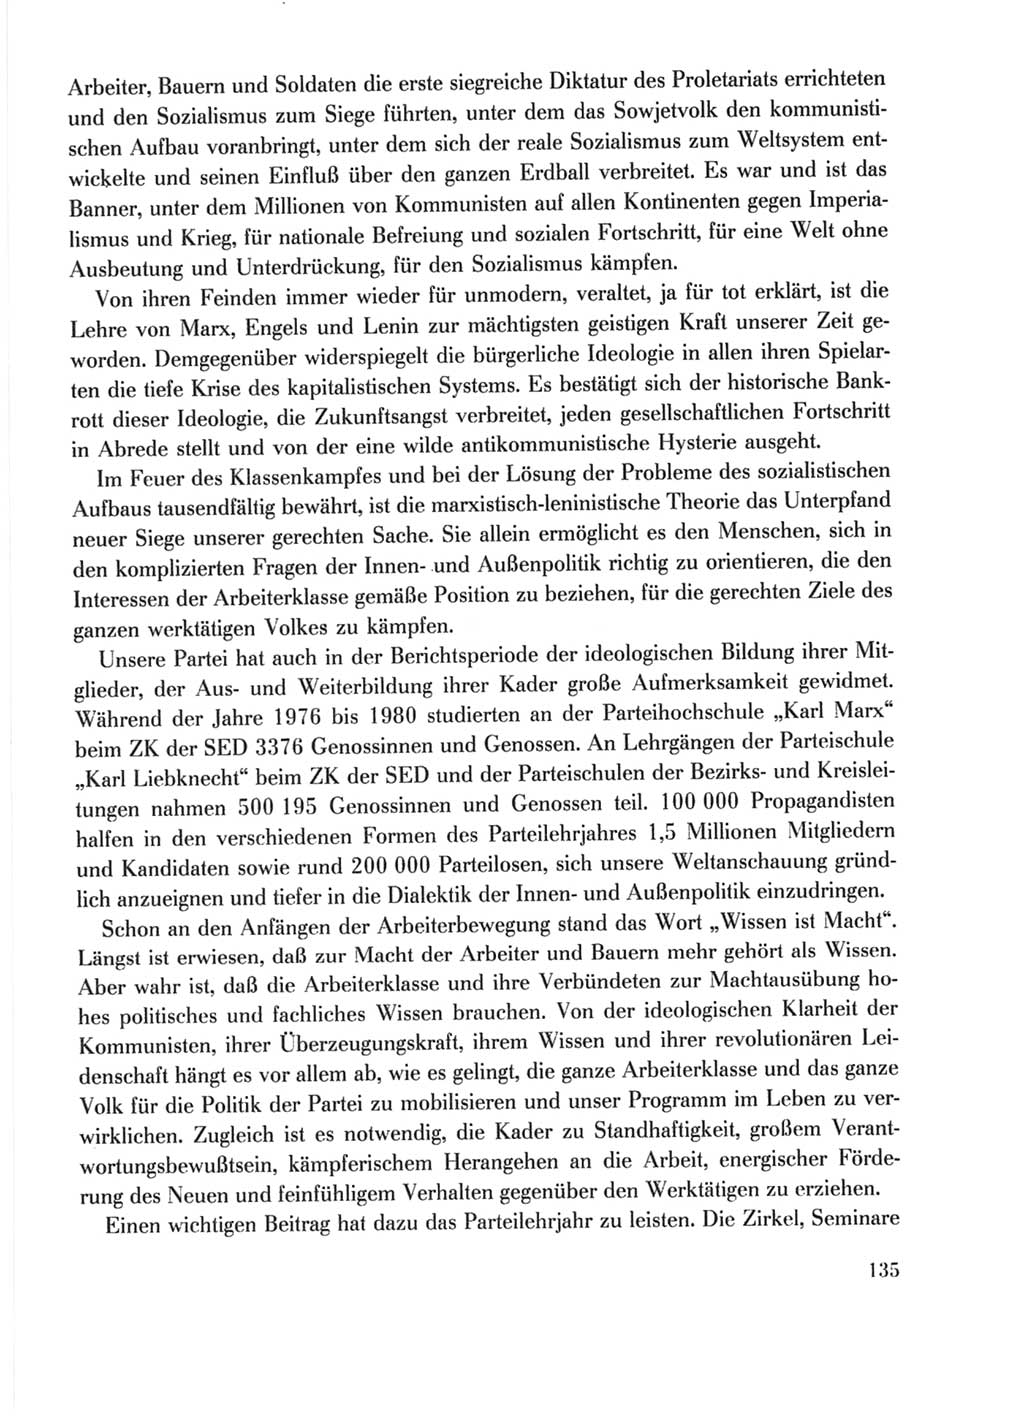 Protokoll der Verhandlungen des Ⅹ. Parteitages der Sozialistischen Einheitspartei Deutschlands (SED) [Deutsche Demokratische Republik (DDR)] 1981, Band 1, Seite 135 (Prot. Verh. Ⅹ. PT SED DDR 1981, Bd. 1, S. 135)